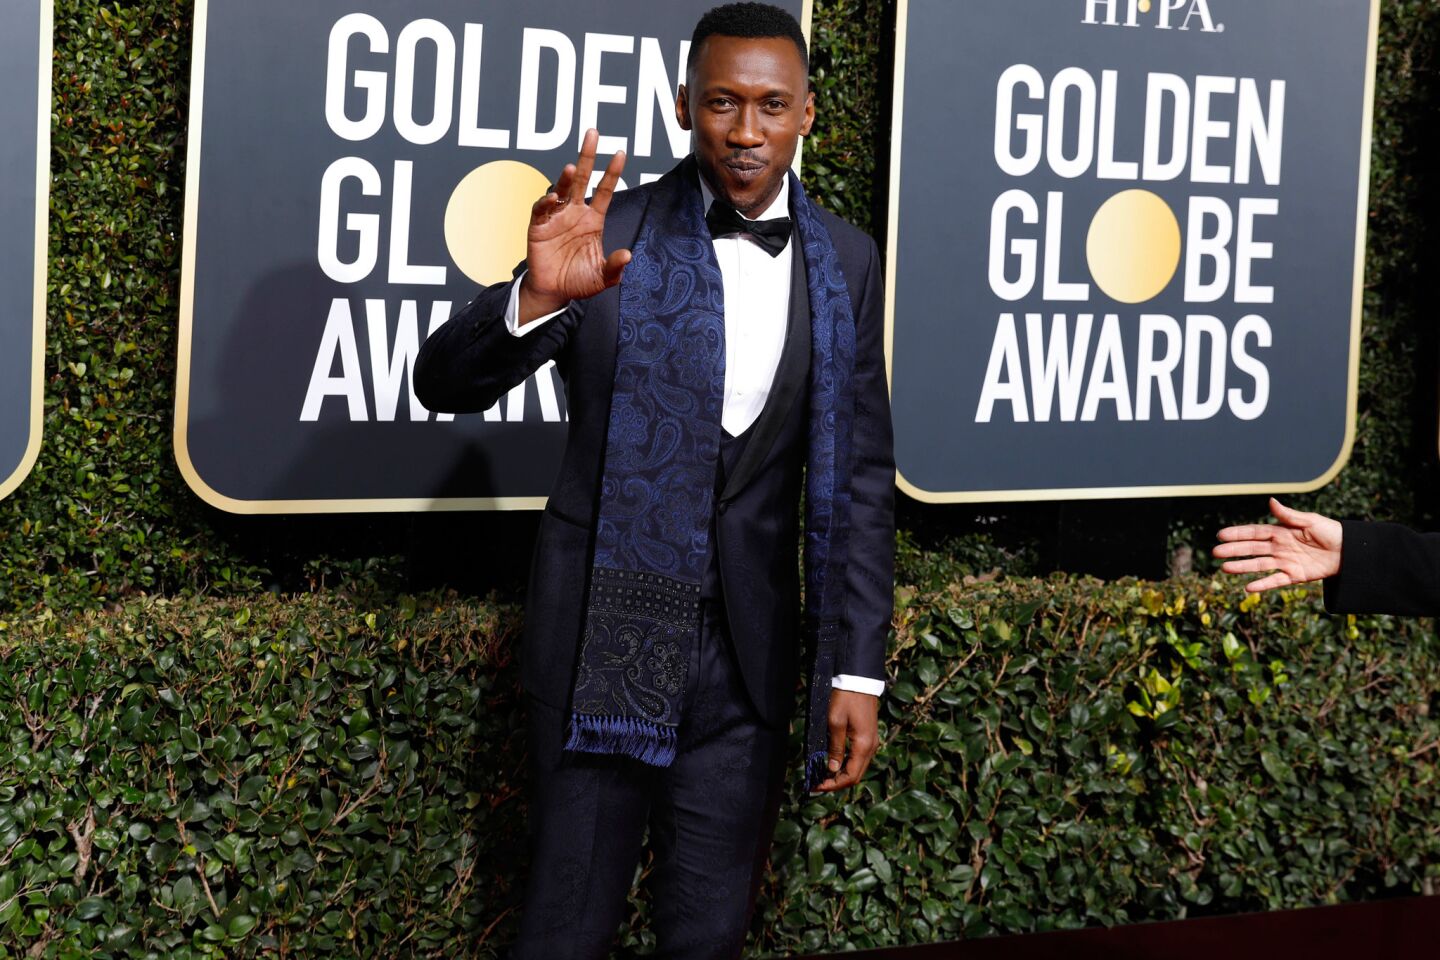 Golden Globes 2019: Best-dressed